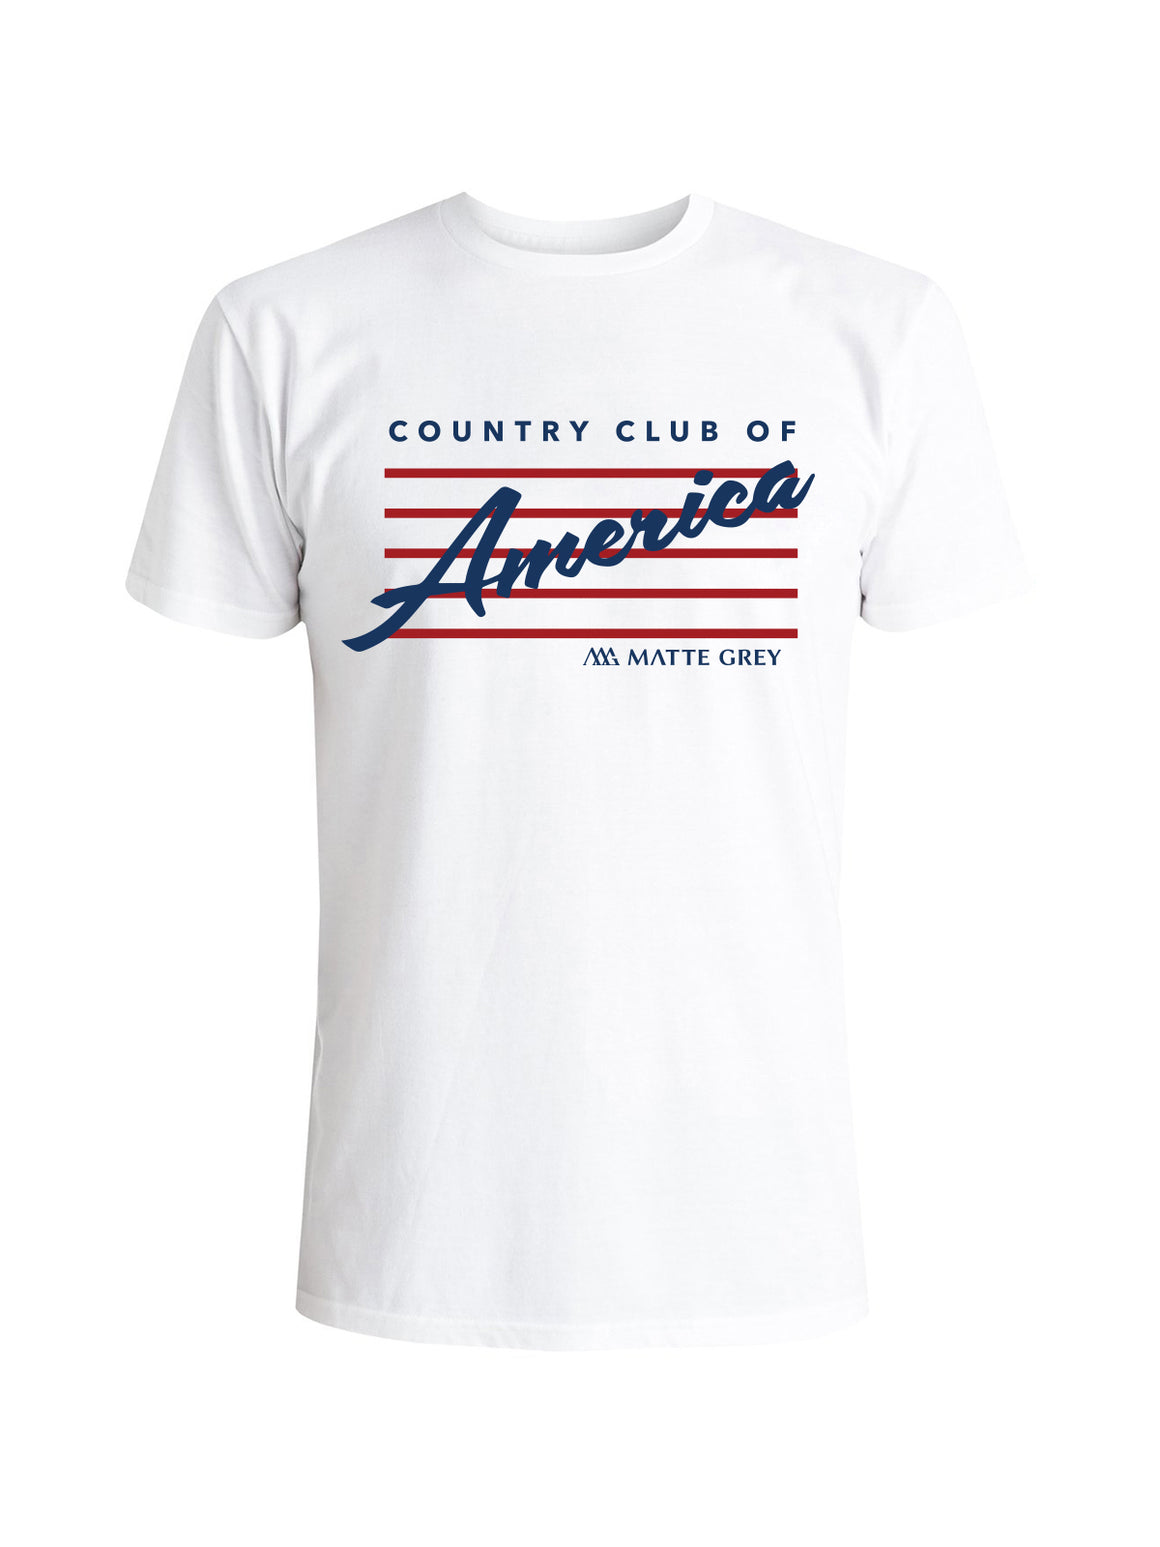 C.C. of America Tee Shirt - White (Navy / Red)